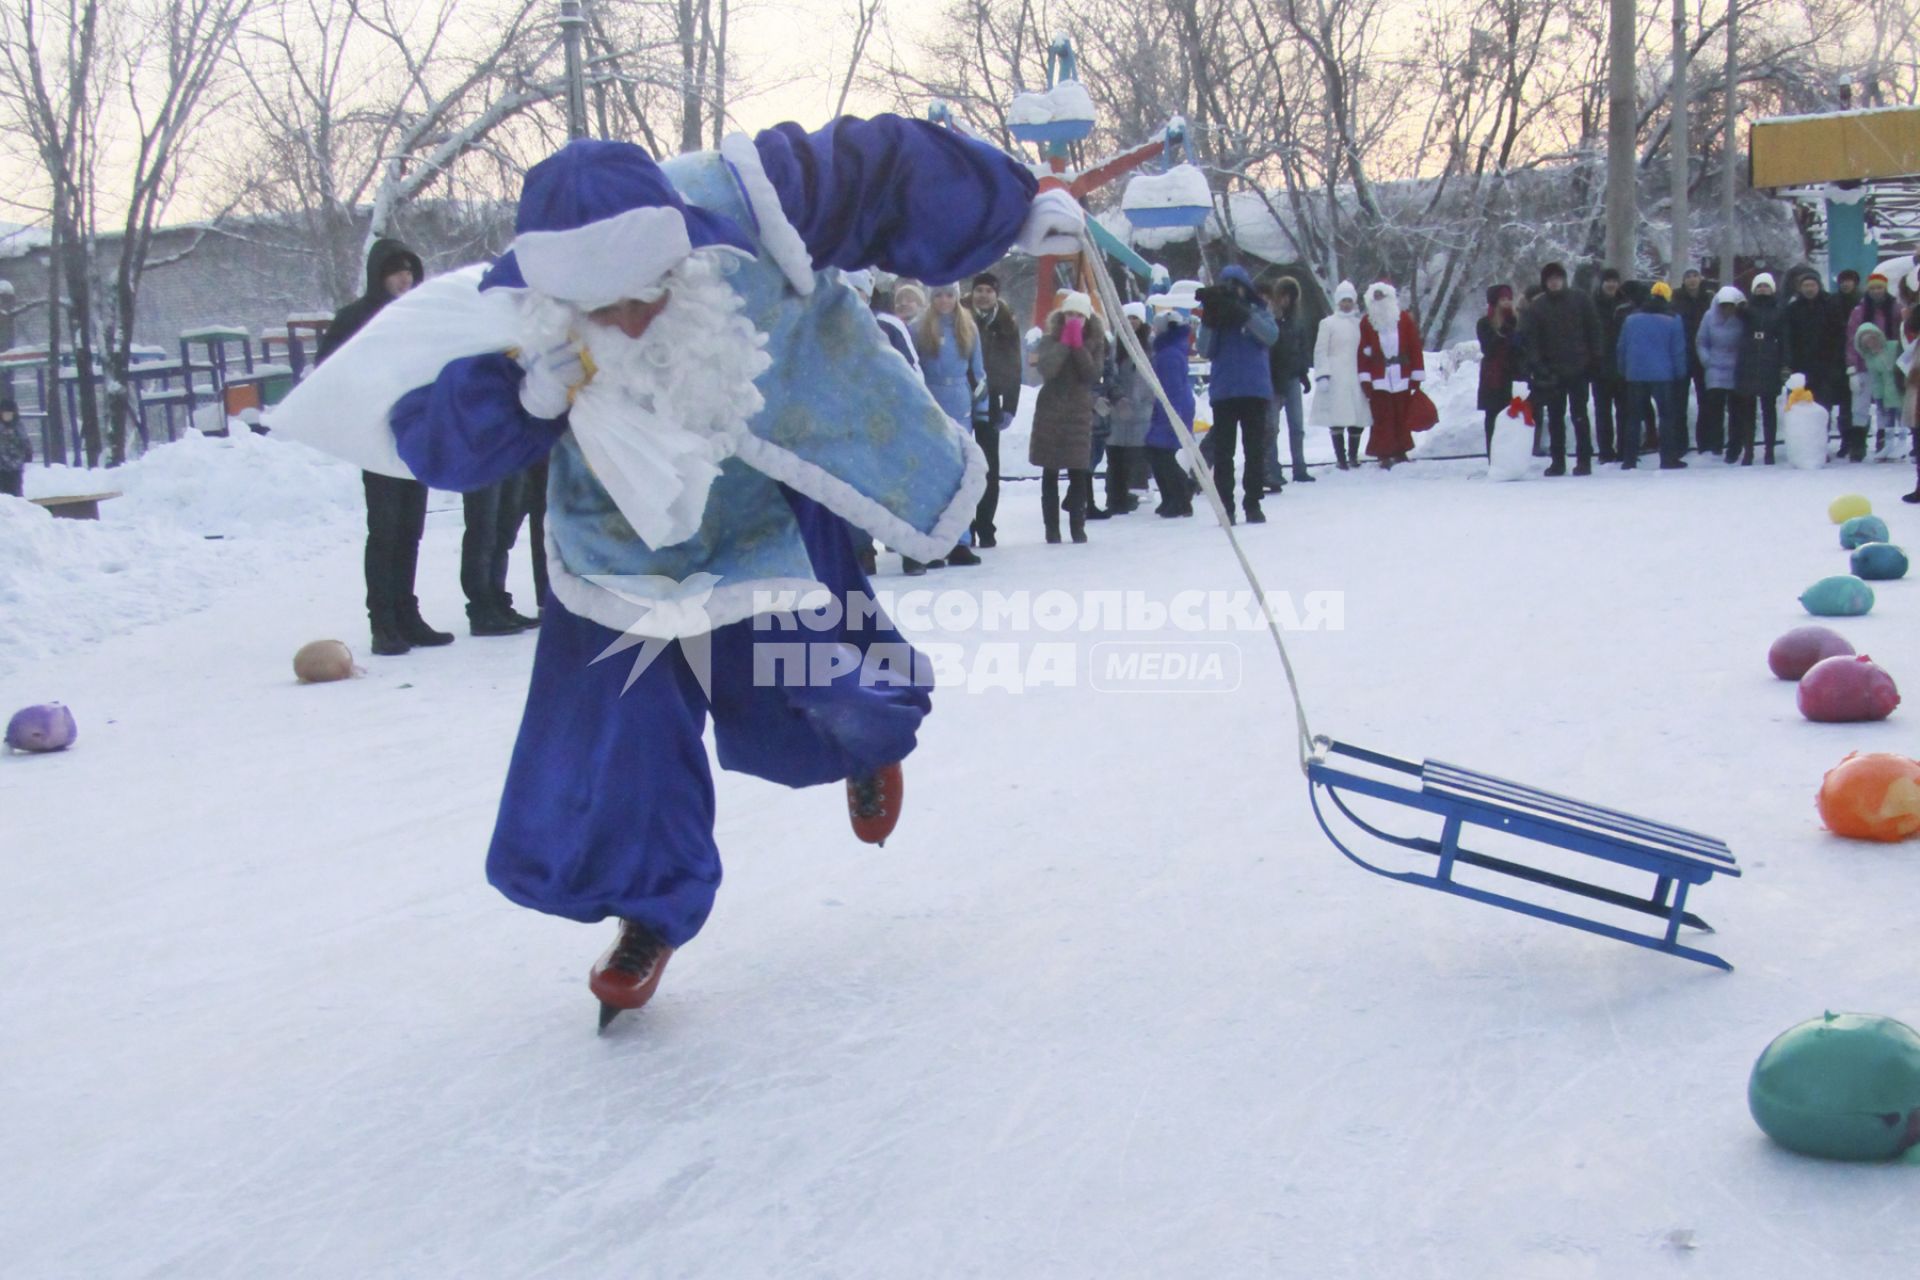 Забег Дедов Морозов на коньках. Дед Мороз на коньках несет мешок с подарками и тащит за собой санки.